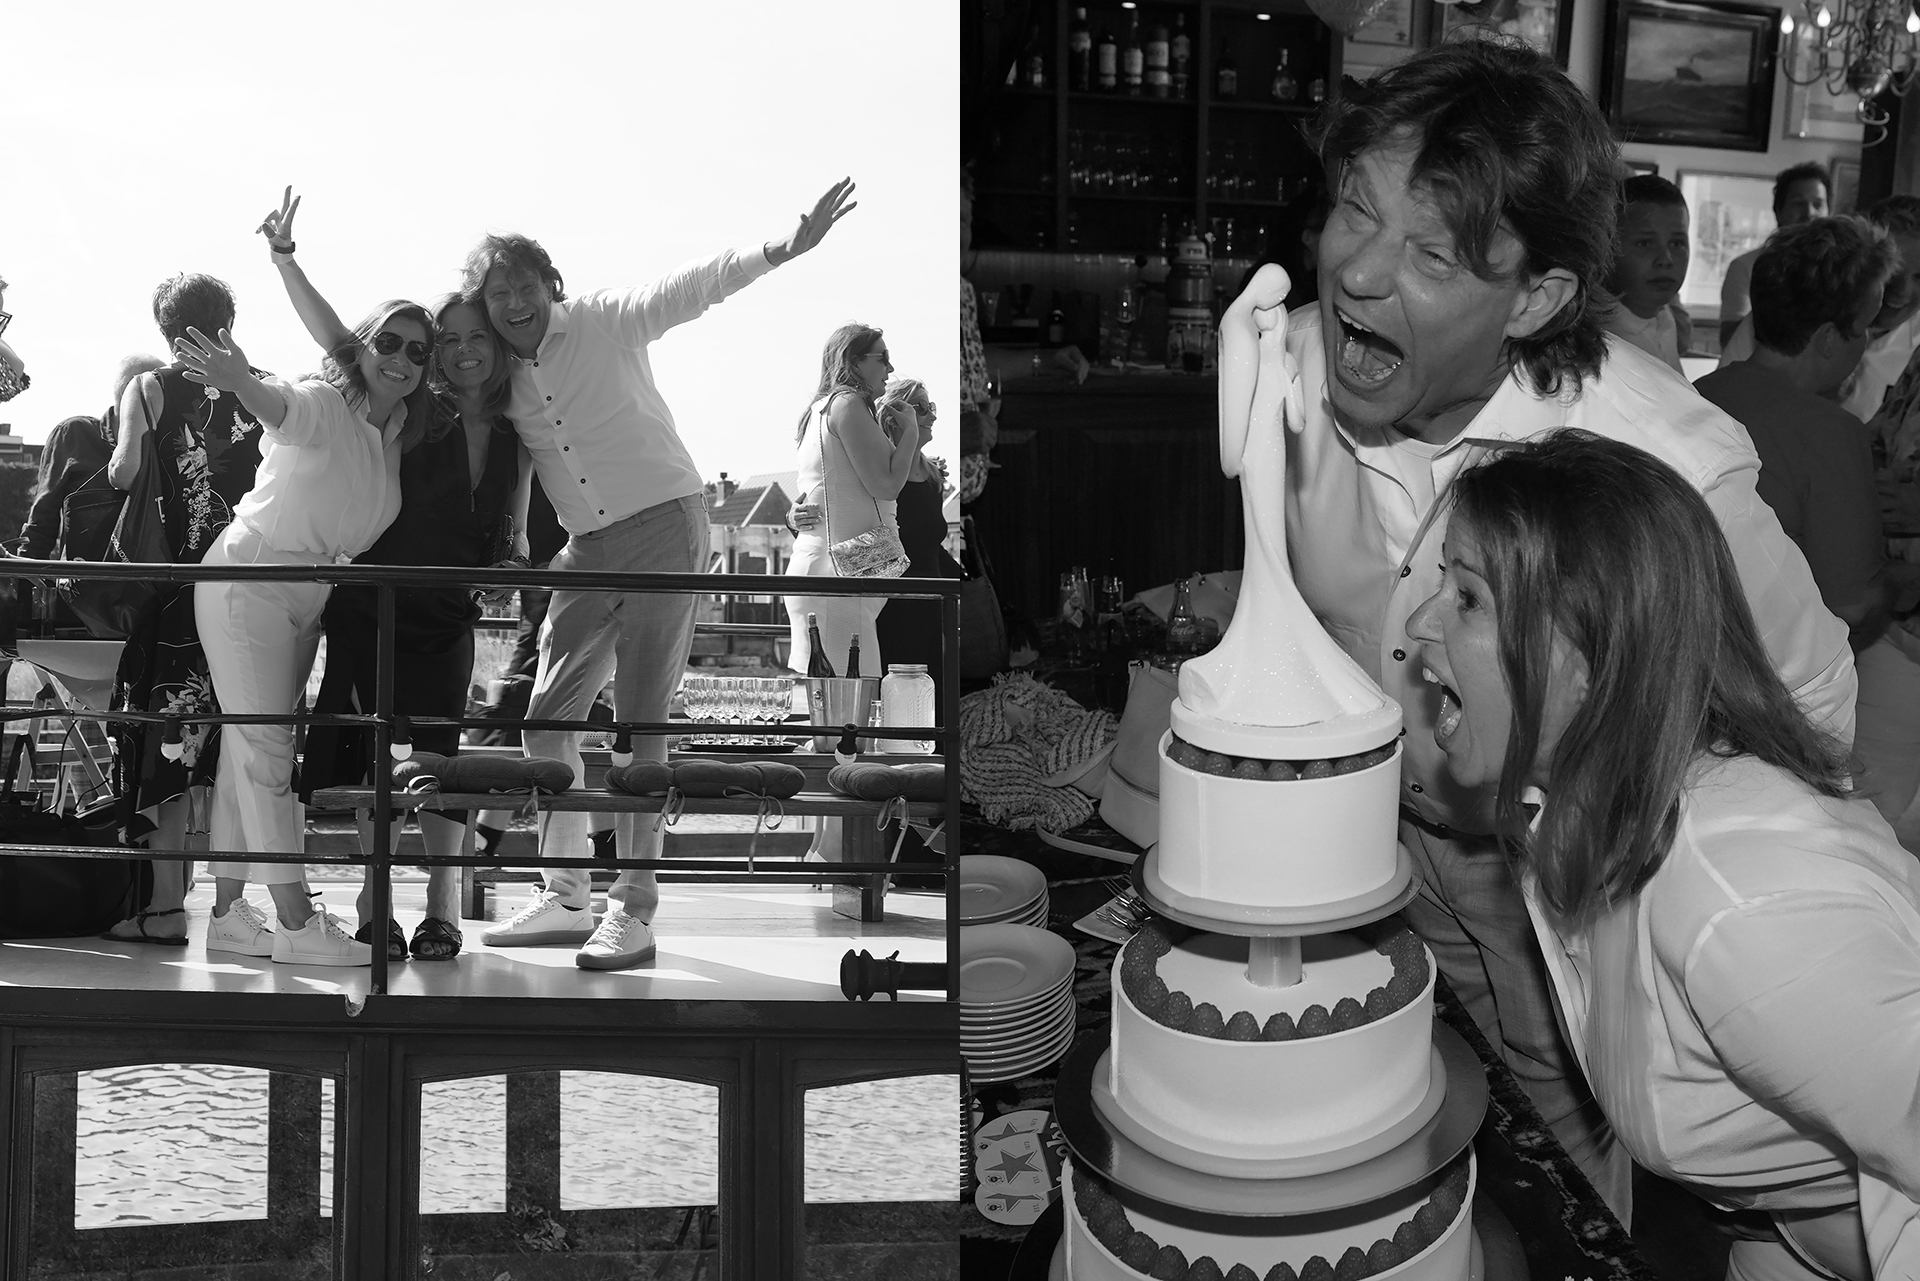 Trouwen bruiloft wedding feest geloften uitspreken trouwfotograaf bruidsfotograaf feest DJ dansen bubbels toast champagne taart reddingcake